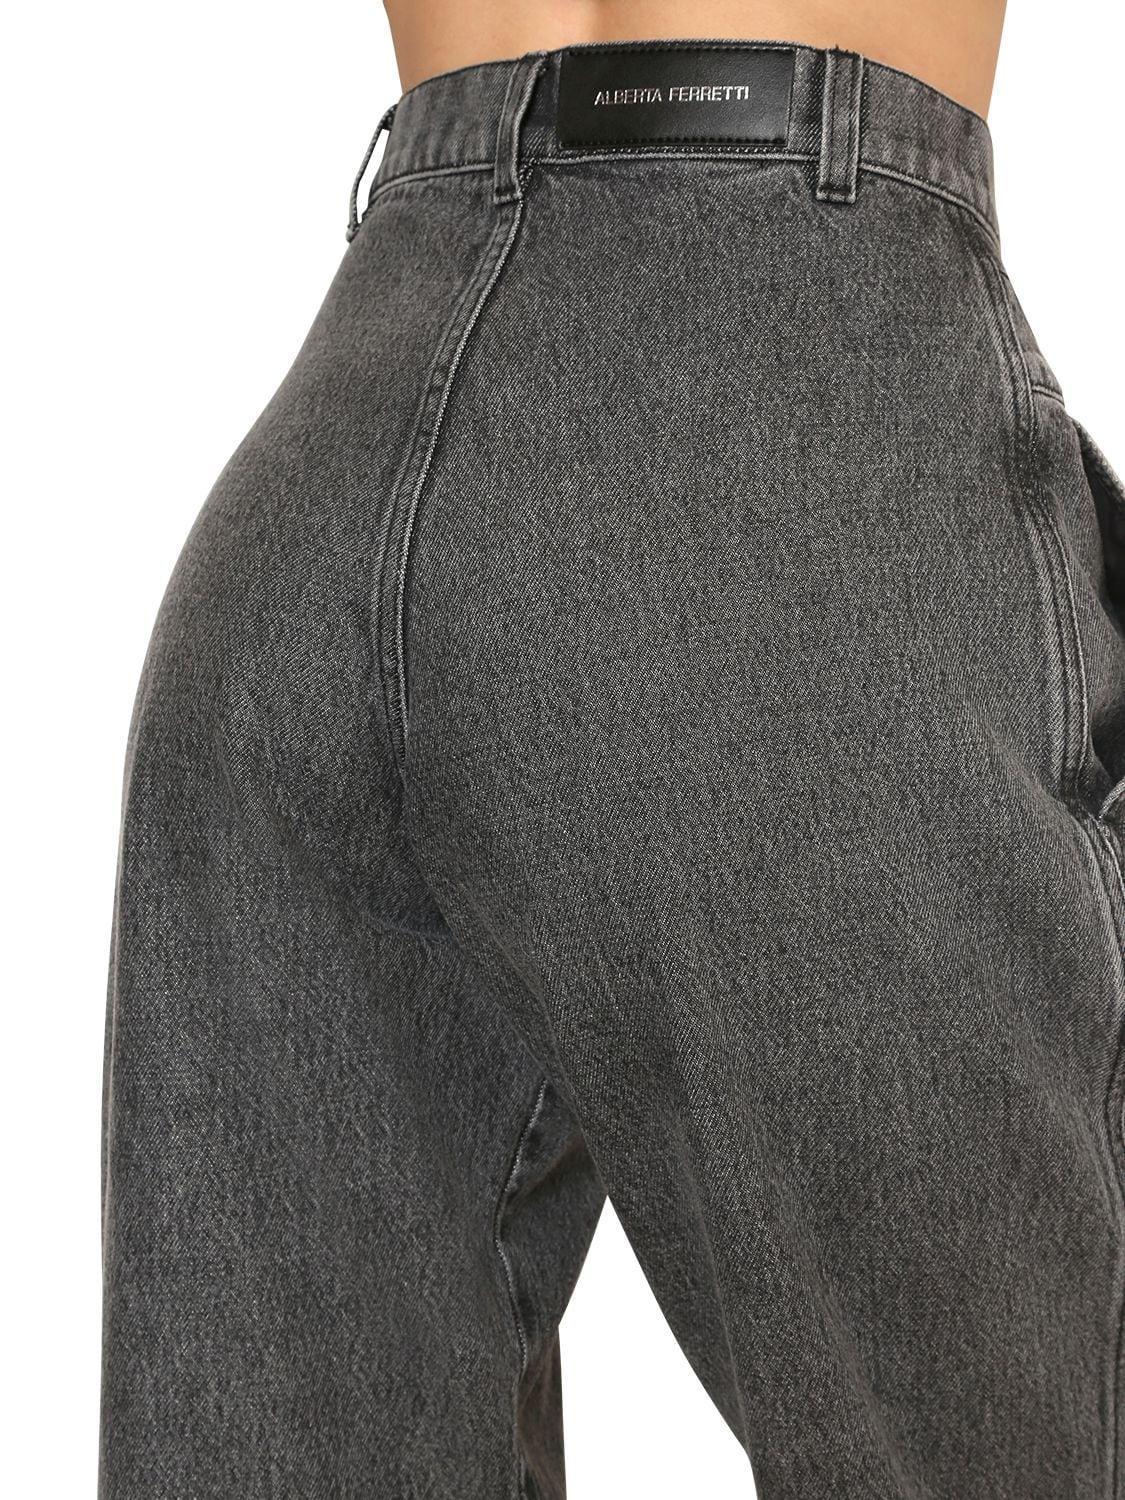 Alberta Ferretti High Waist Wide Leg Cotton Denim Jeans in Dark Grey ...